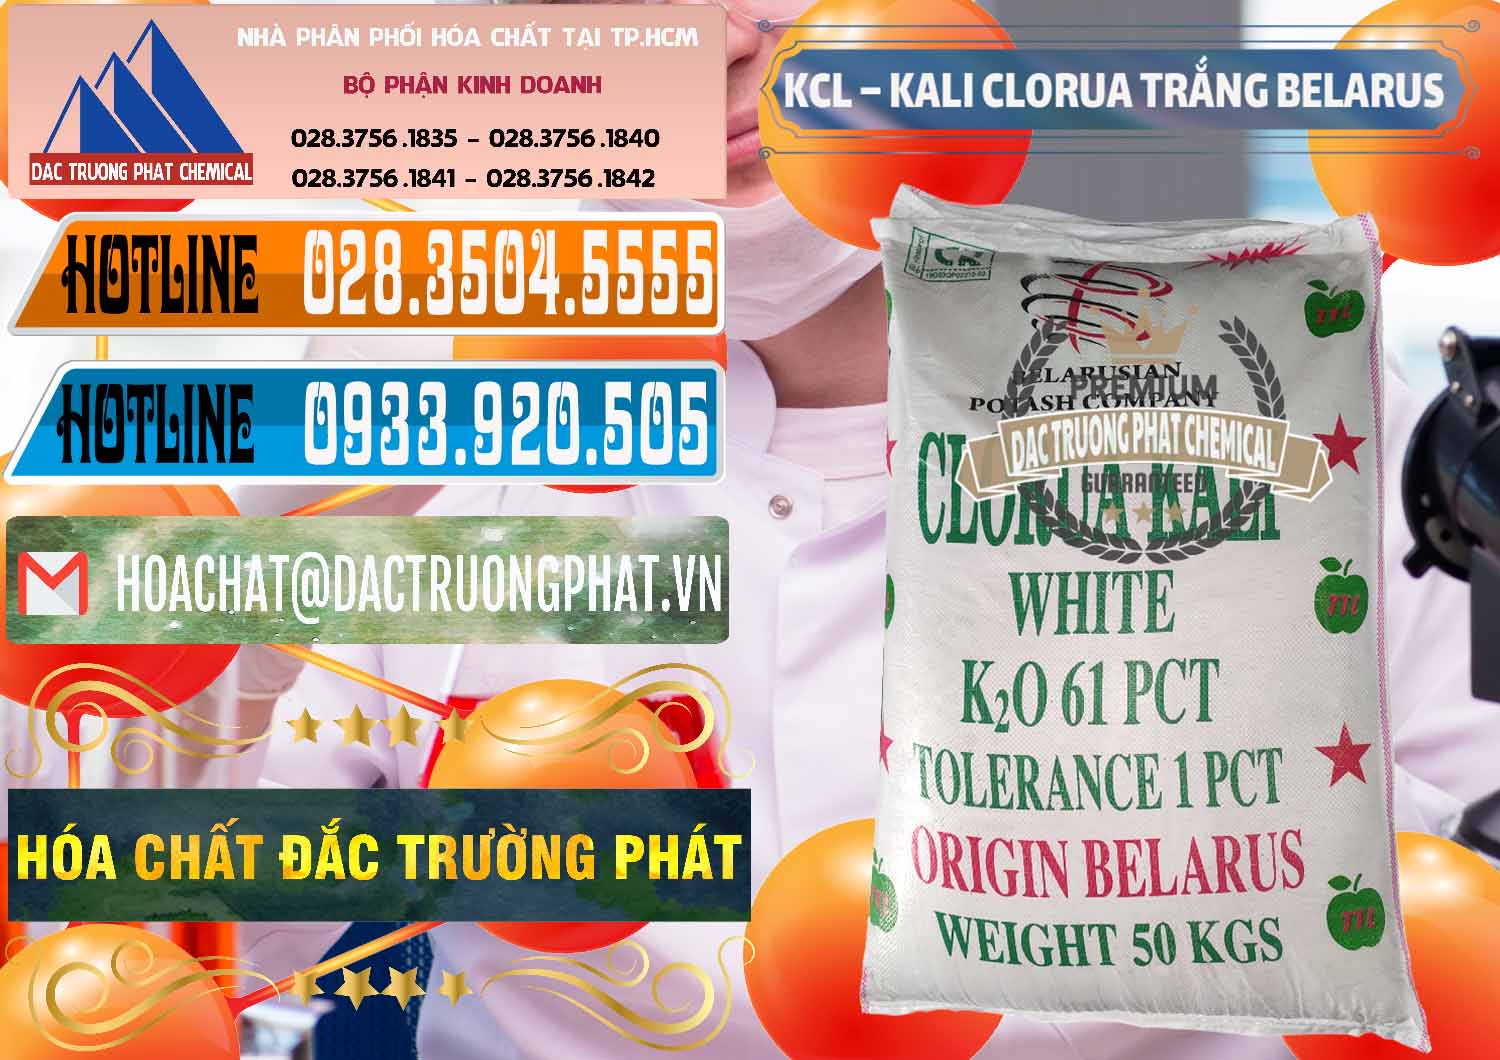 Cty cung cấp & bán KCL – Kali Clorua Trắng Belarus - 0085 - Nơi chuyên phân phối và nhập khẩu hóa chất tại TP.HCM - stmp.net